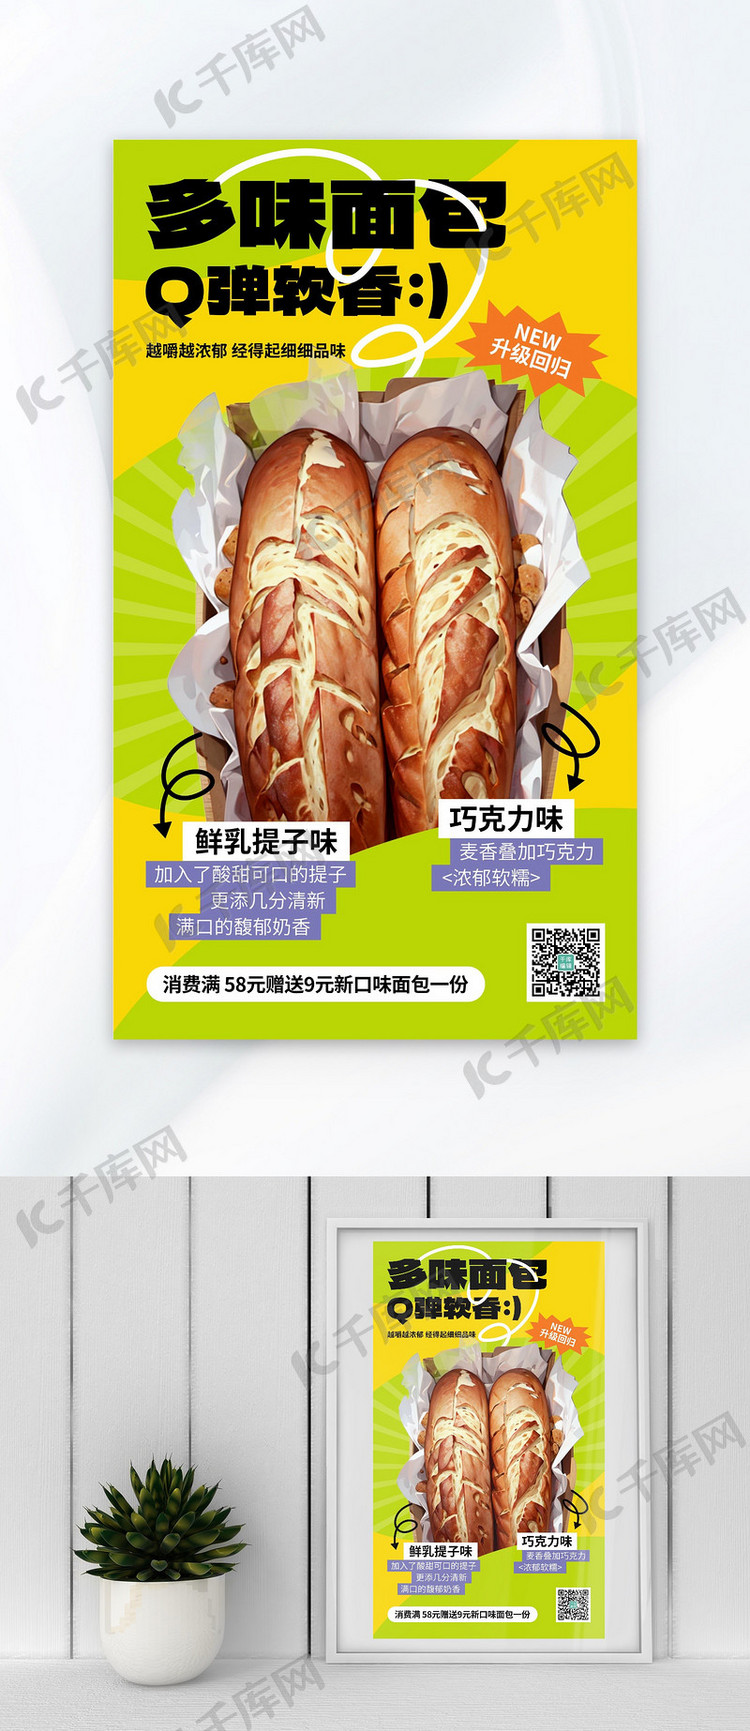 面包上新绿色AIGC广告宣传海报